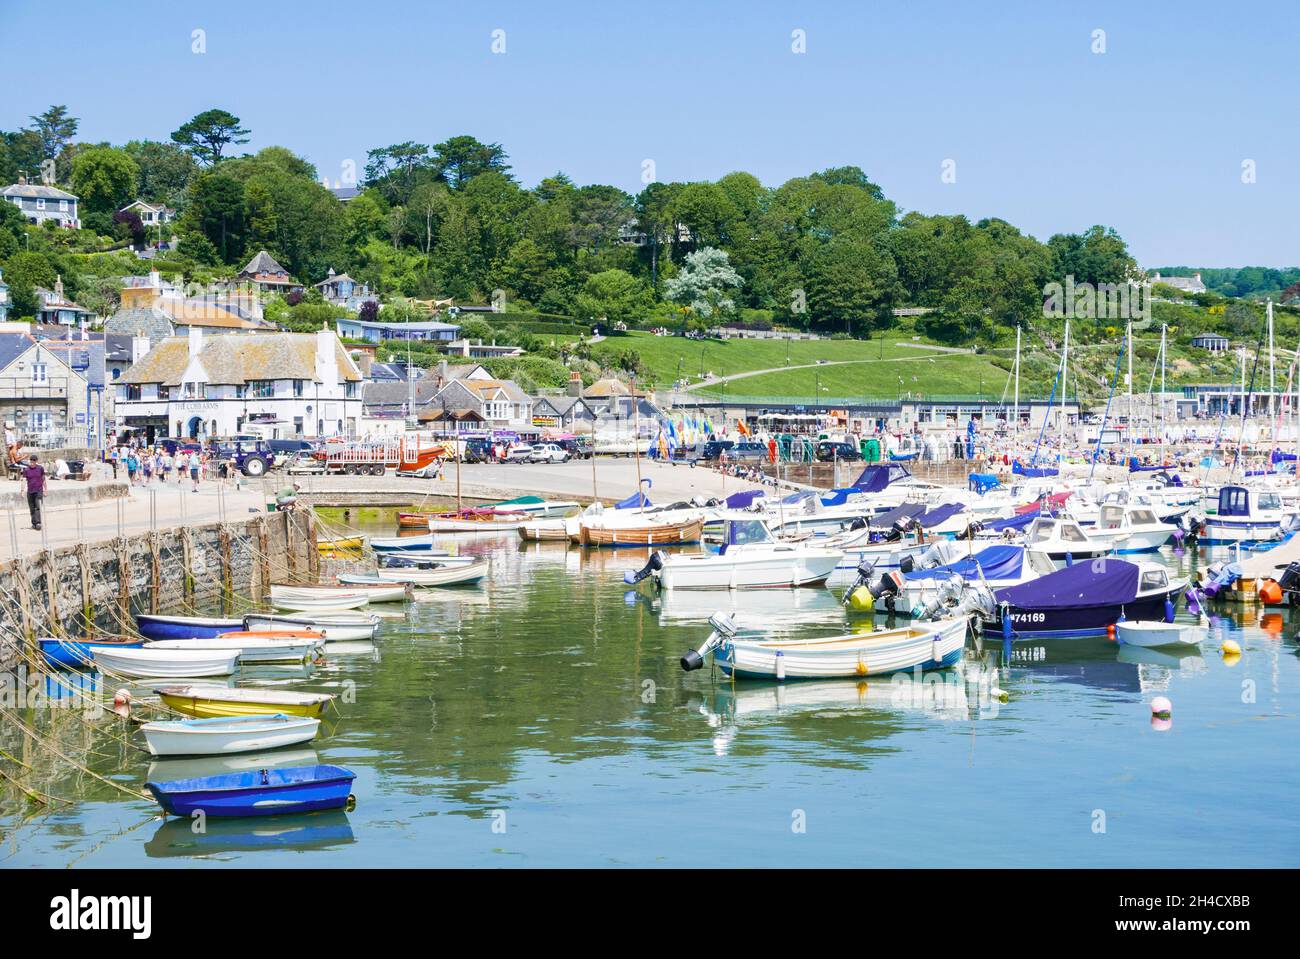 Bateaux de pêche et bateaux de plaisance dans le port de la côte jurassique à Lyme Regis Dorset Angleterre GB Europe Banque D'Images